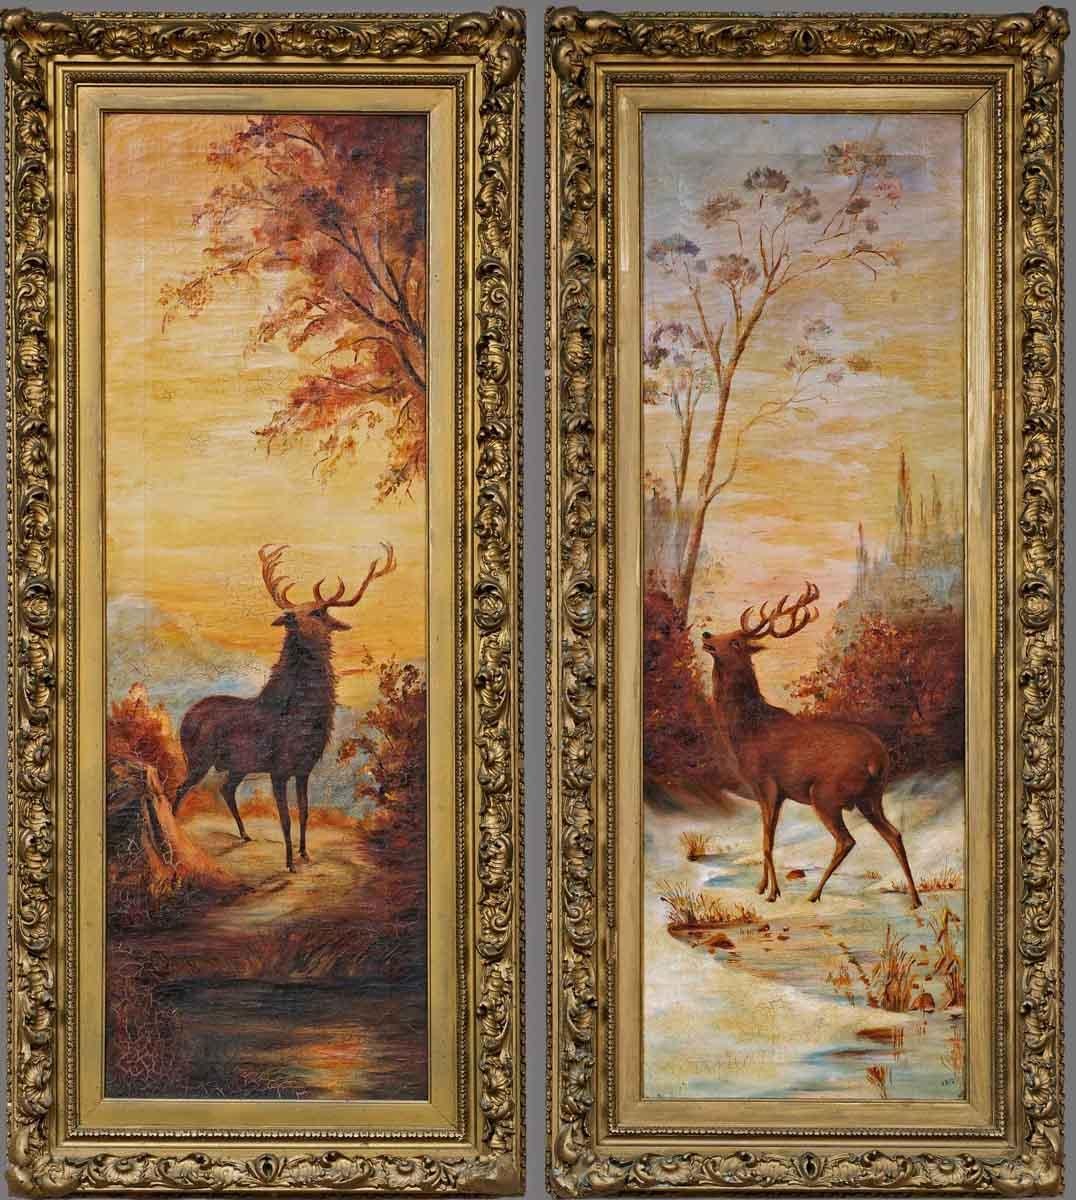 Deux cerfs dans un paysage d'hiver, Twilight, huile sur toile, datée de 1912